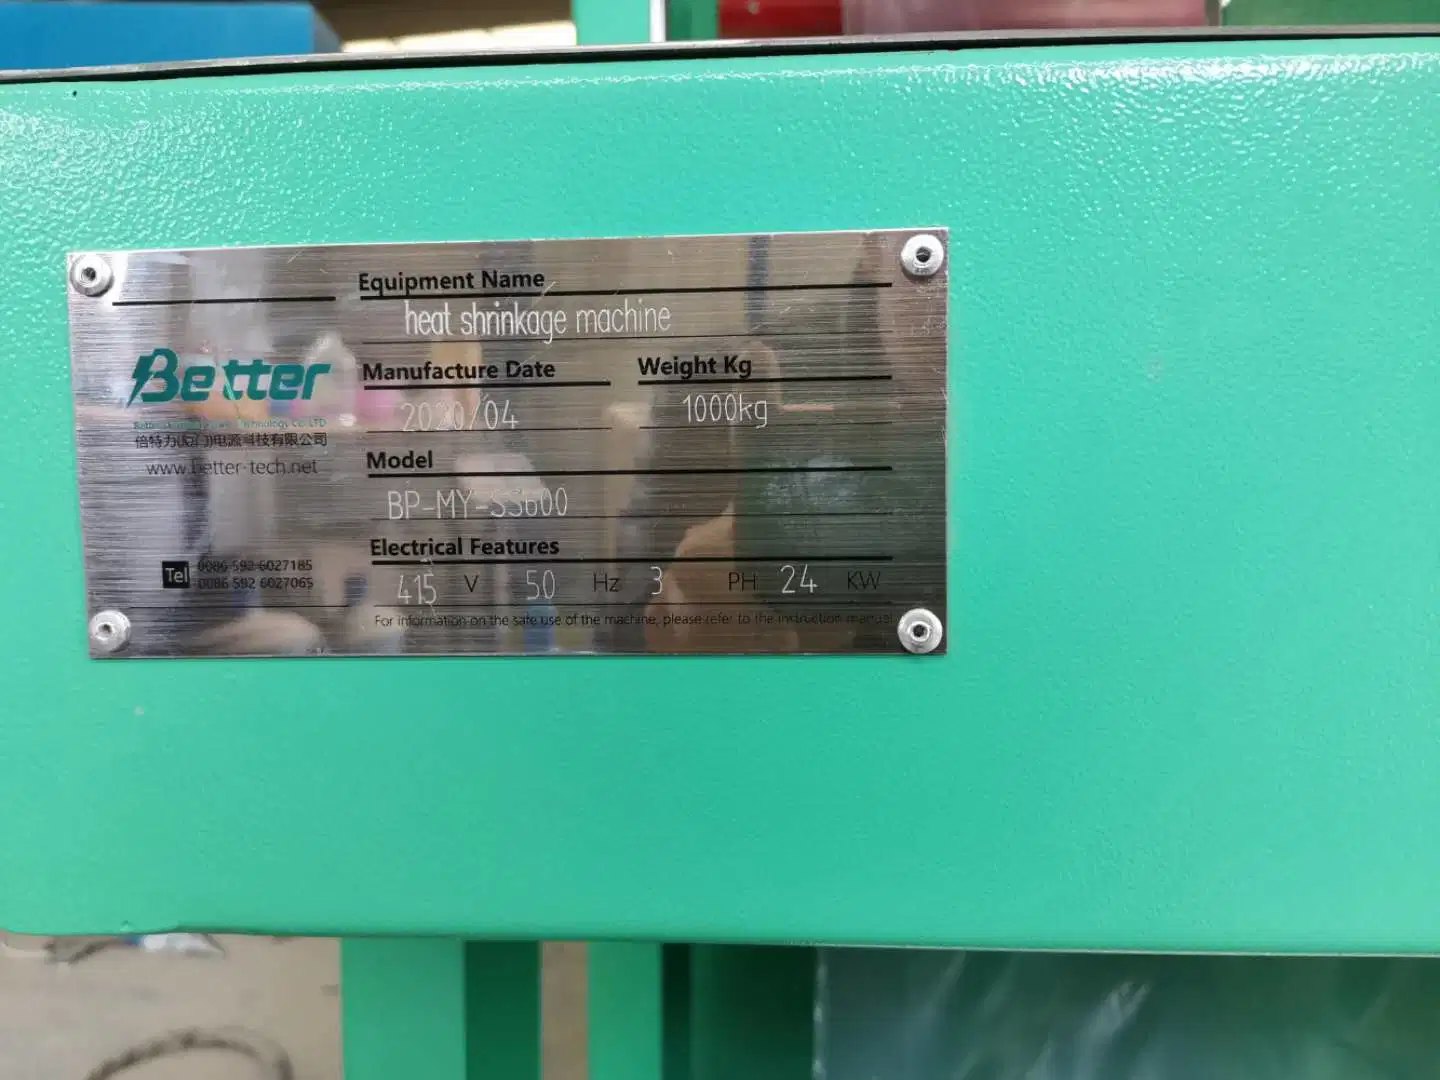 Emballage de la batterie thermorétractable pour machine à emballer